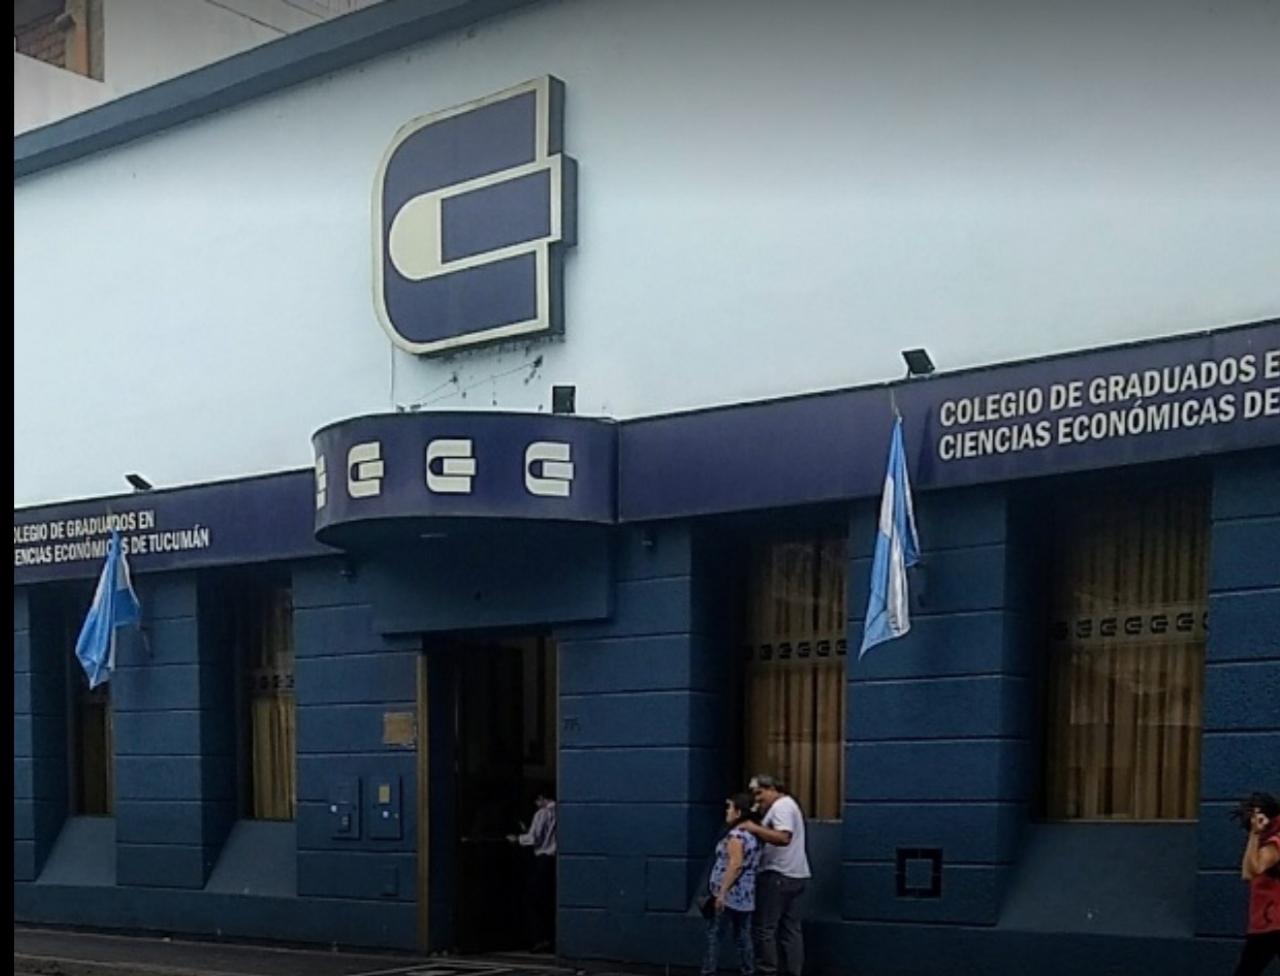 La sede del Colegio de Graduados en Ciencias Económicas de Tucumán.